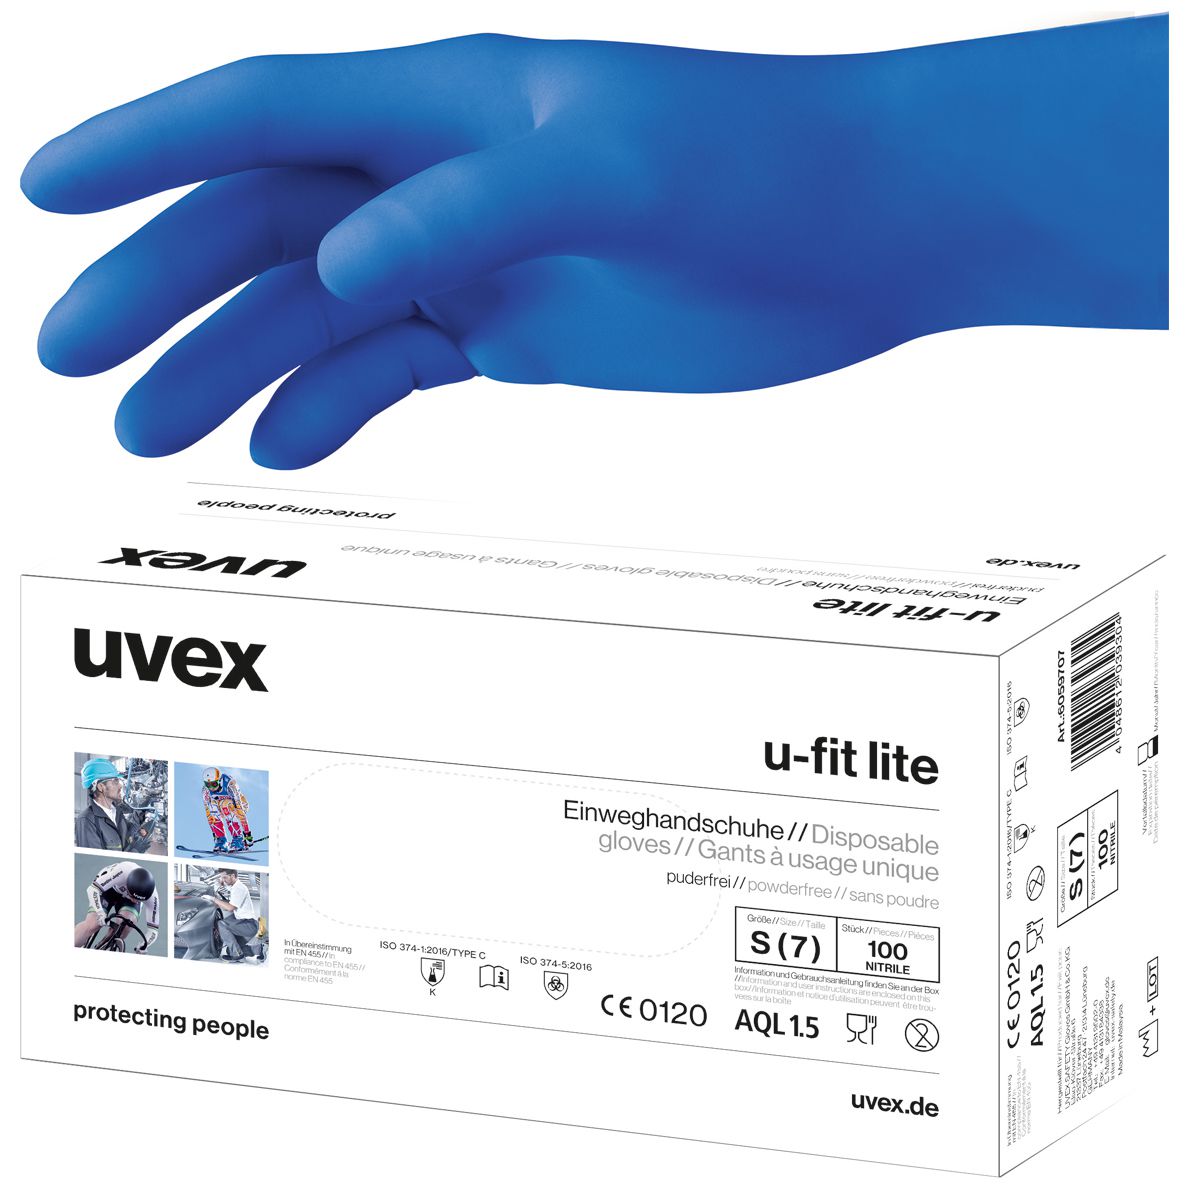 Uvex u-fit lite Nitril-Untersuchungshandschuhe - EN 374 & 455 - Blau - 10/XL